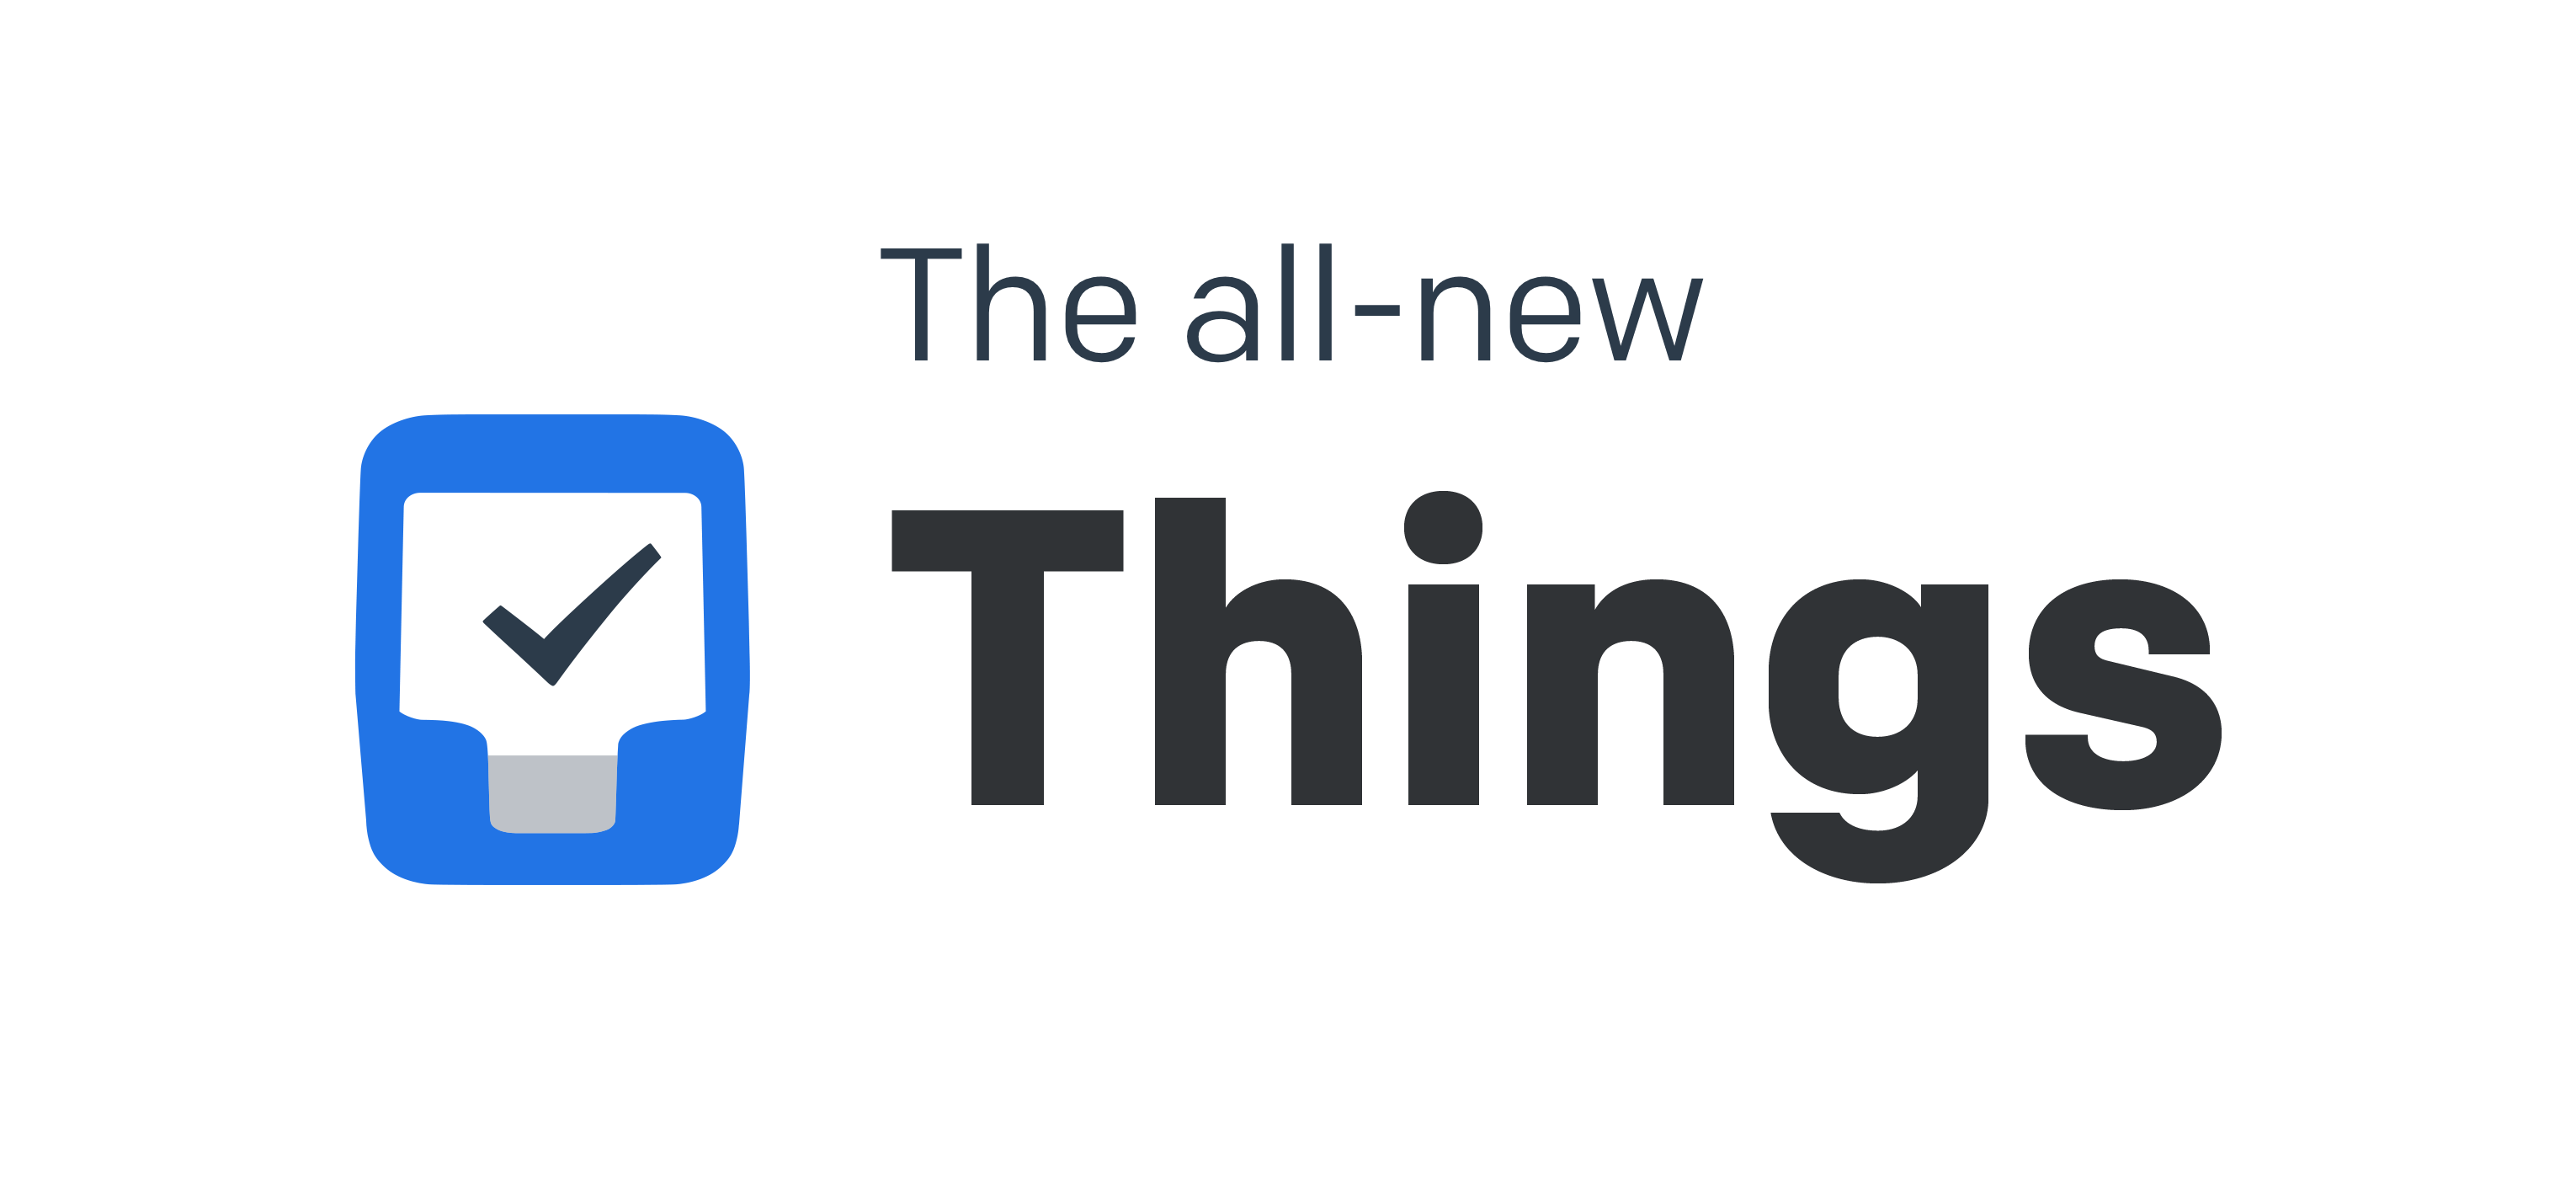 Things Logo